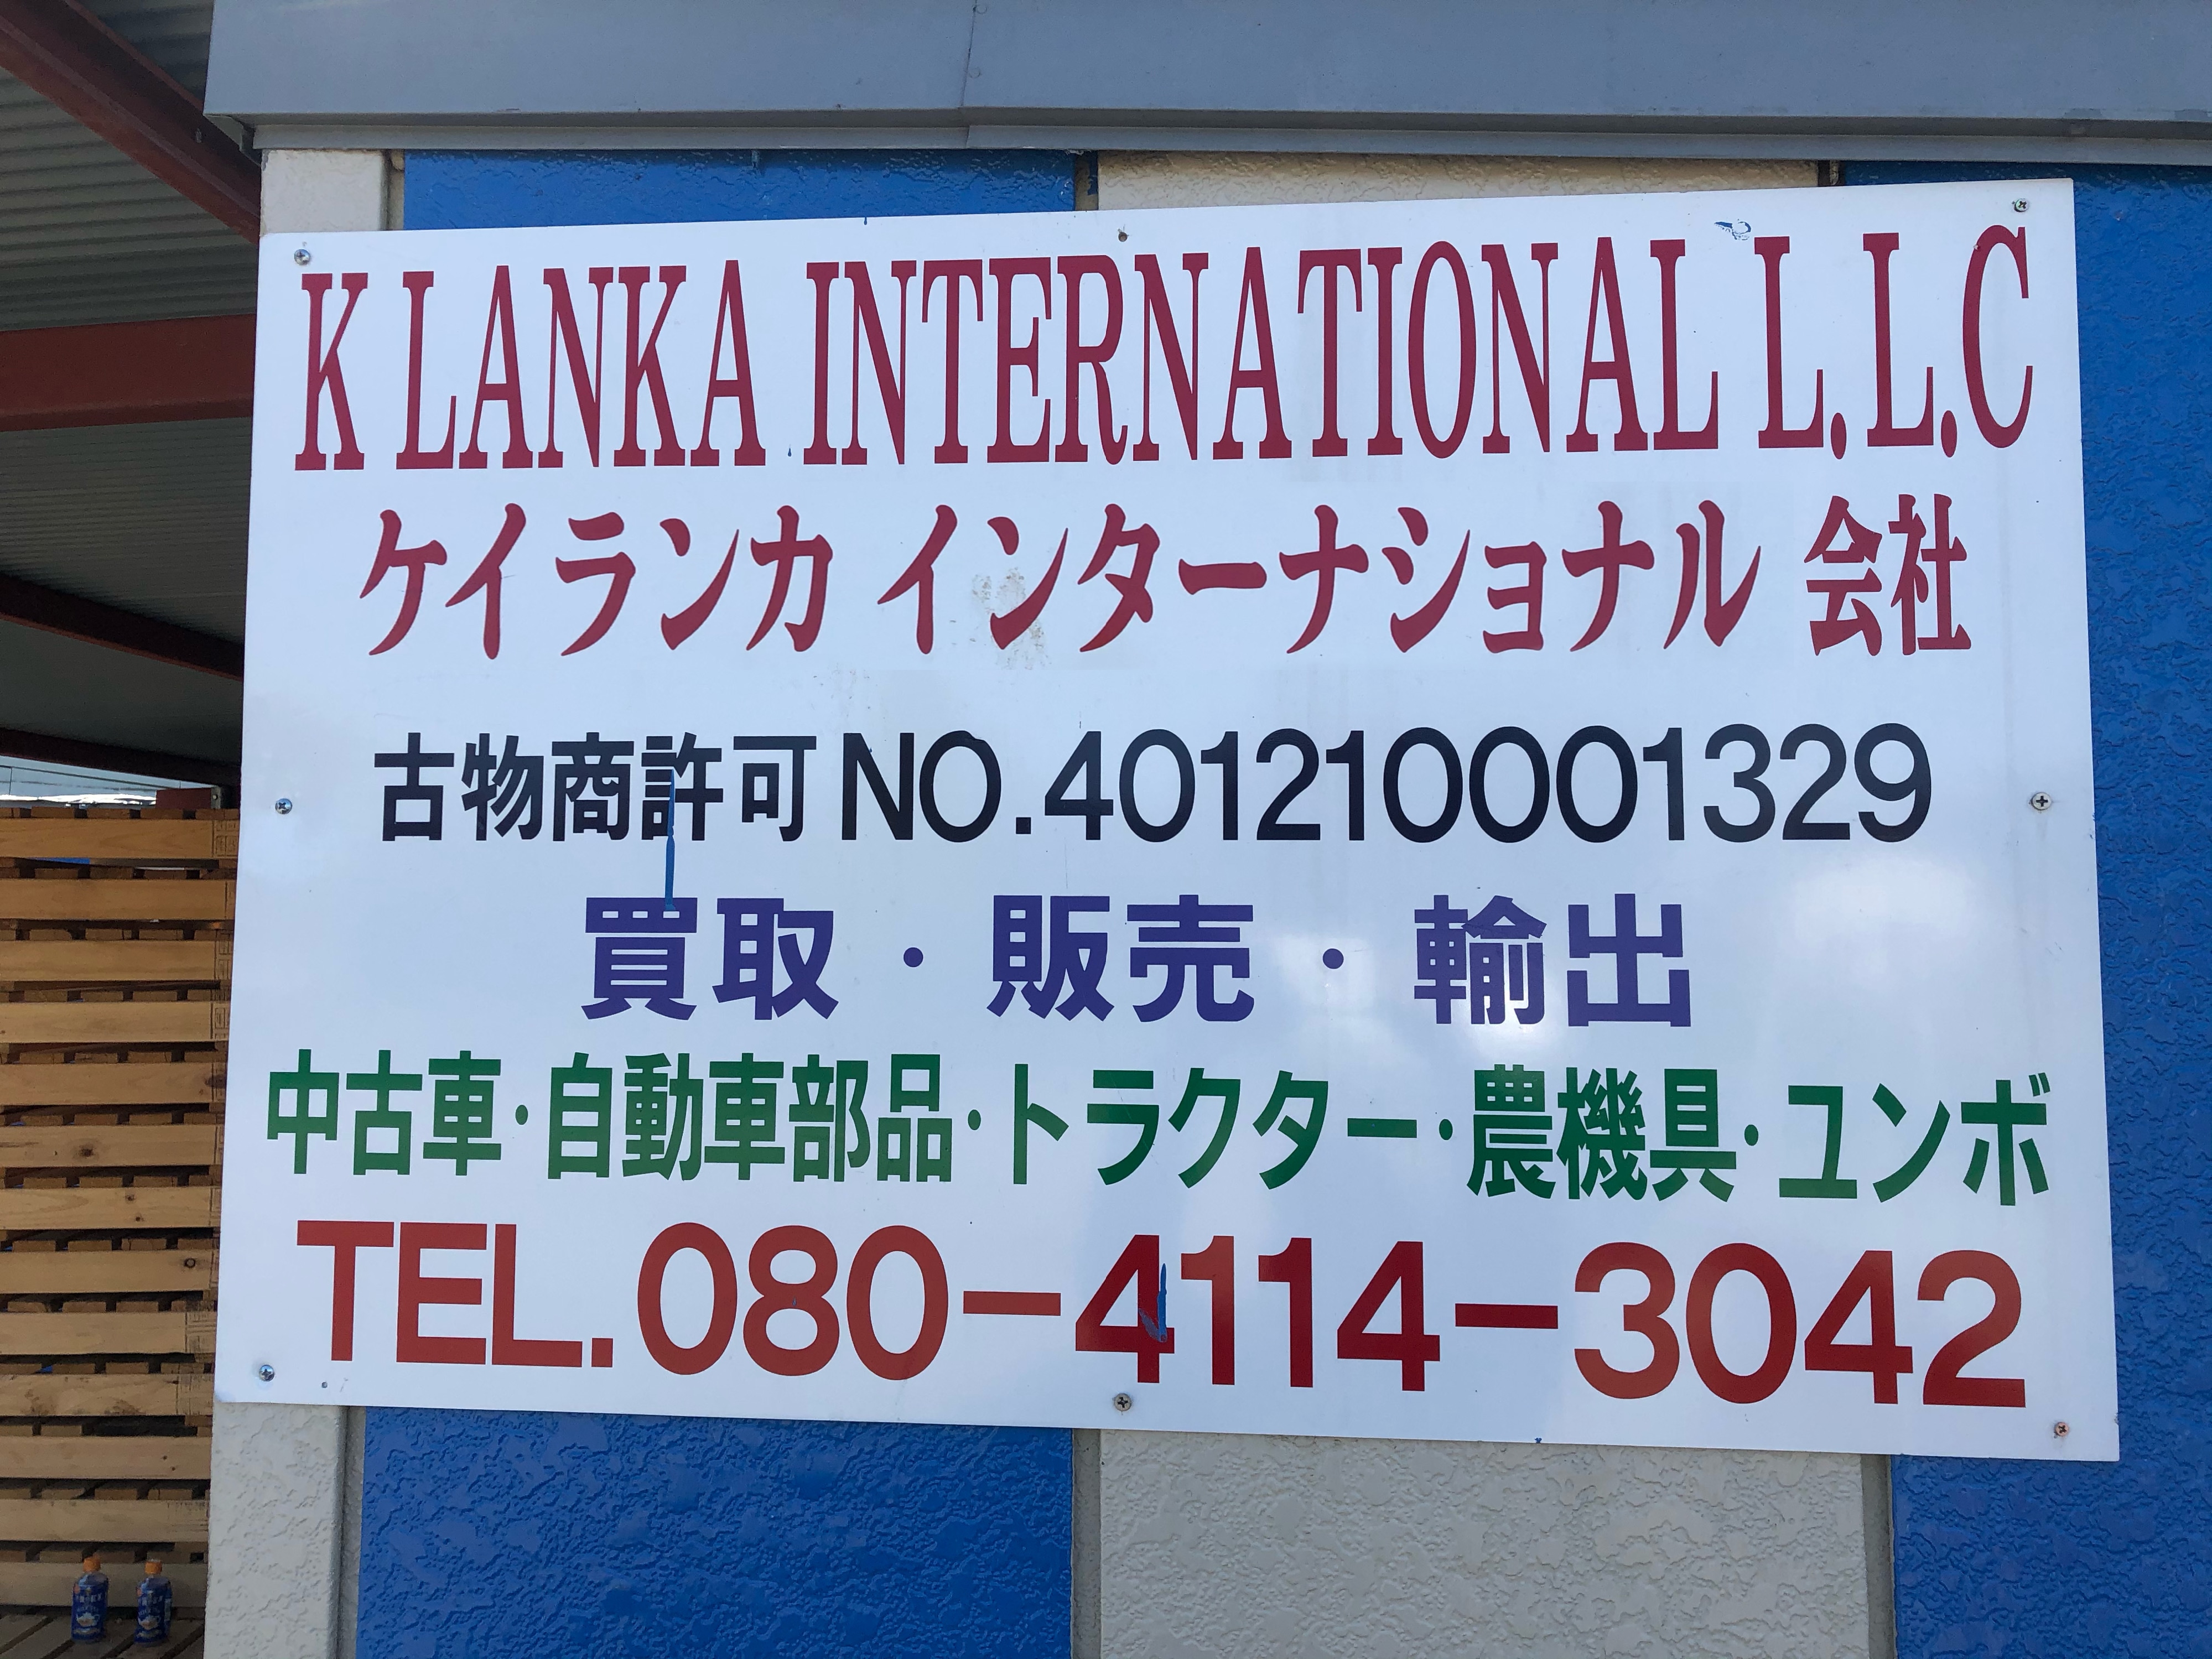 K Lanka International 